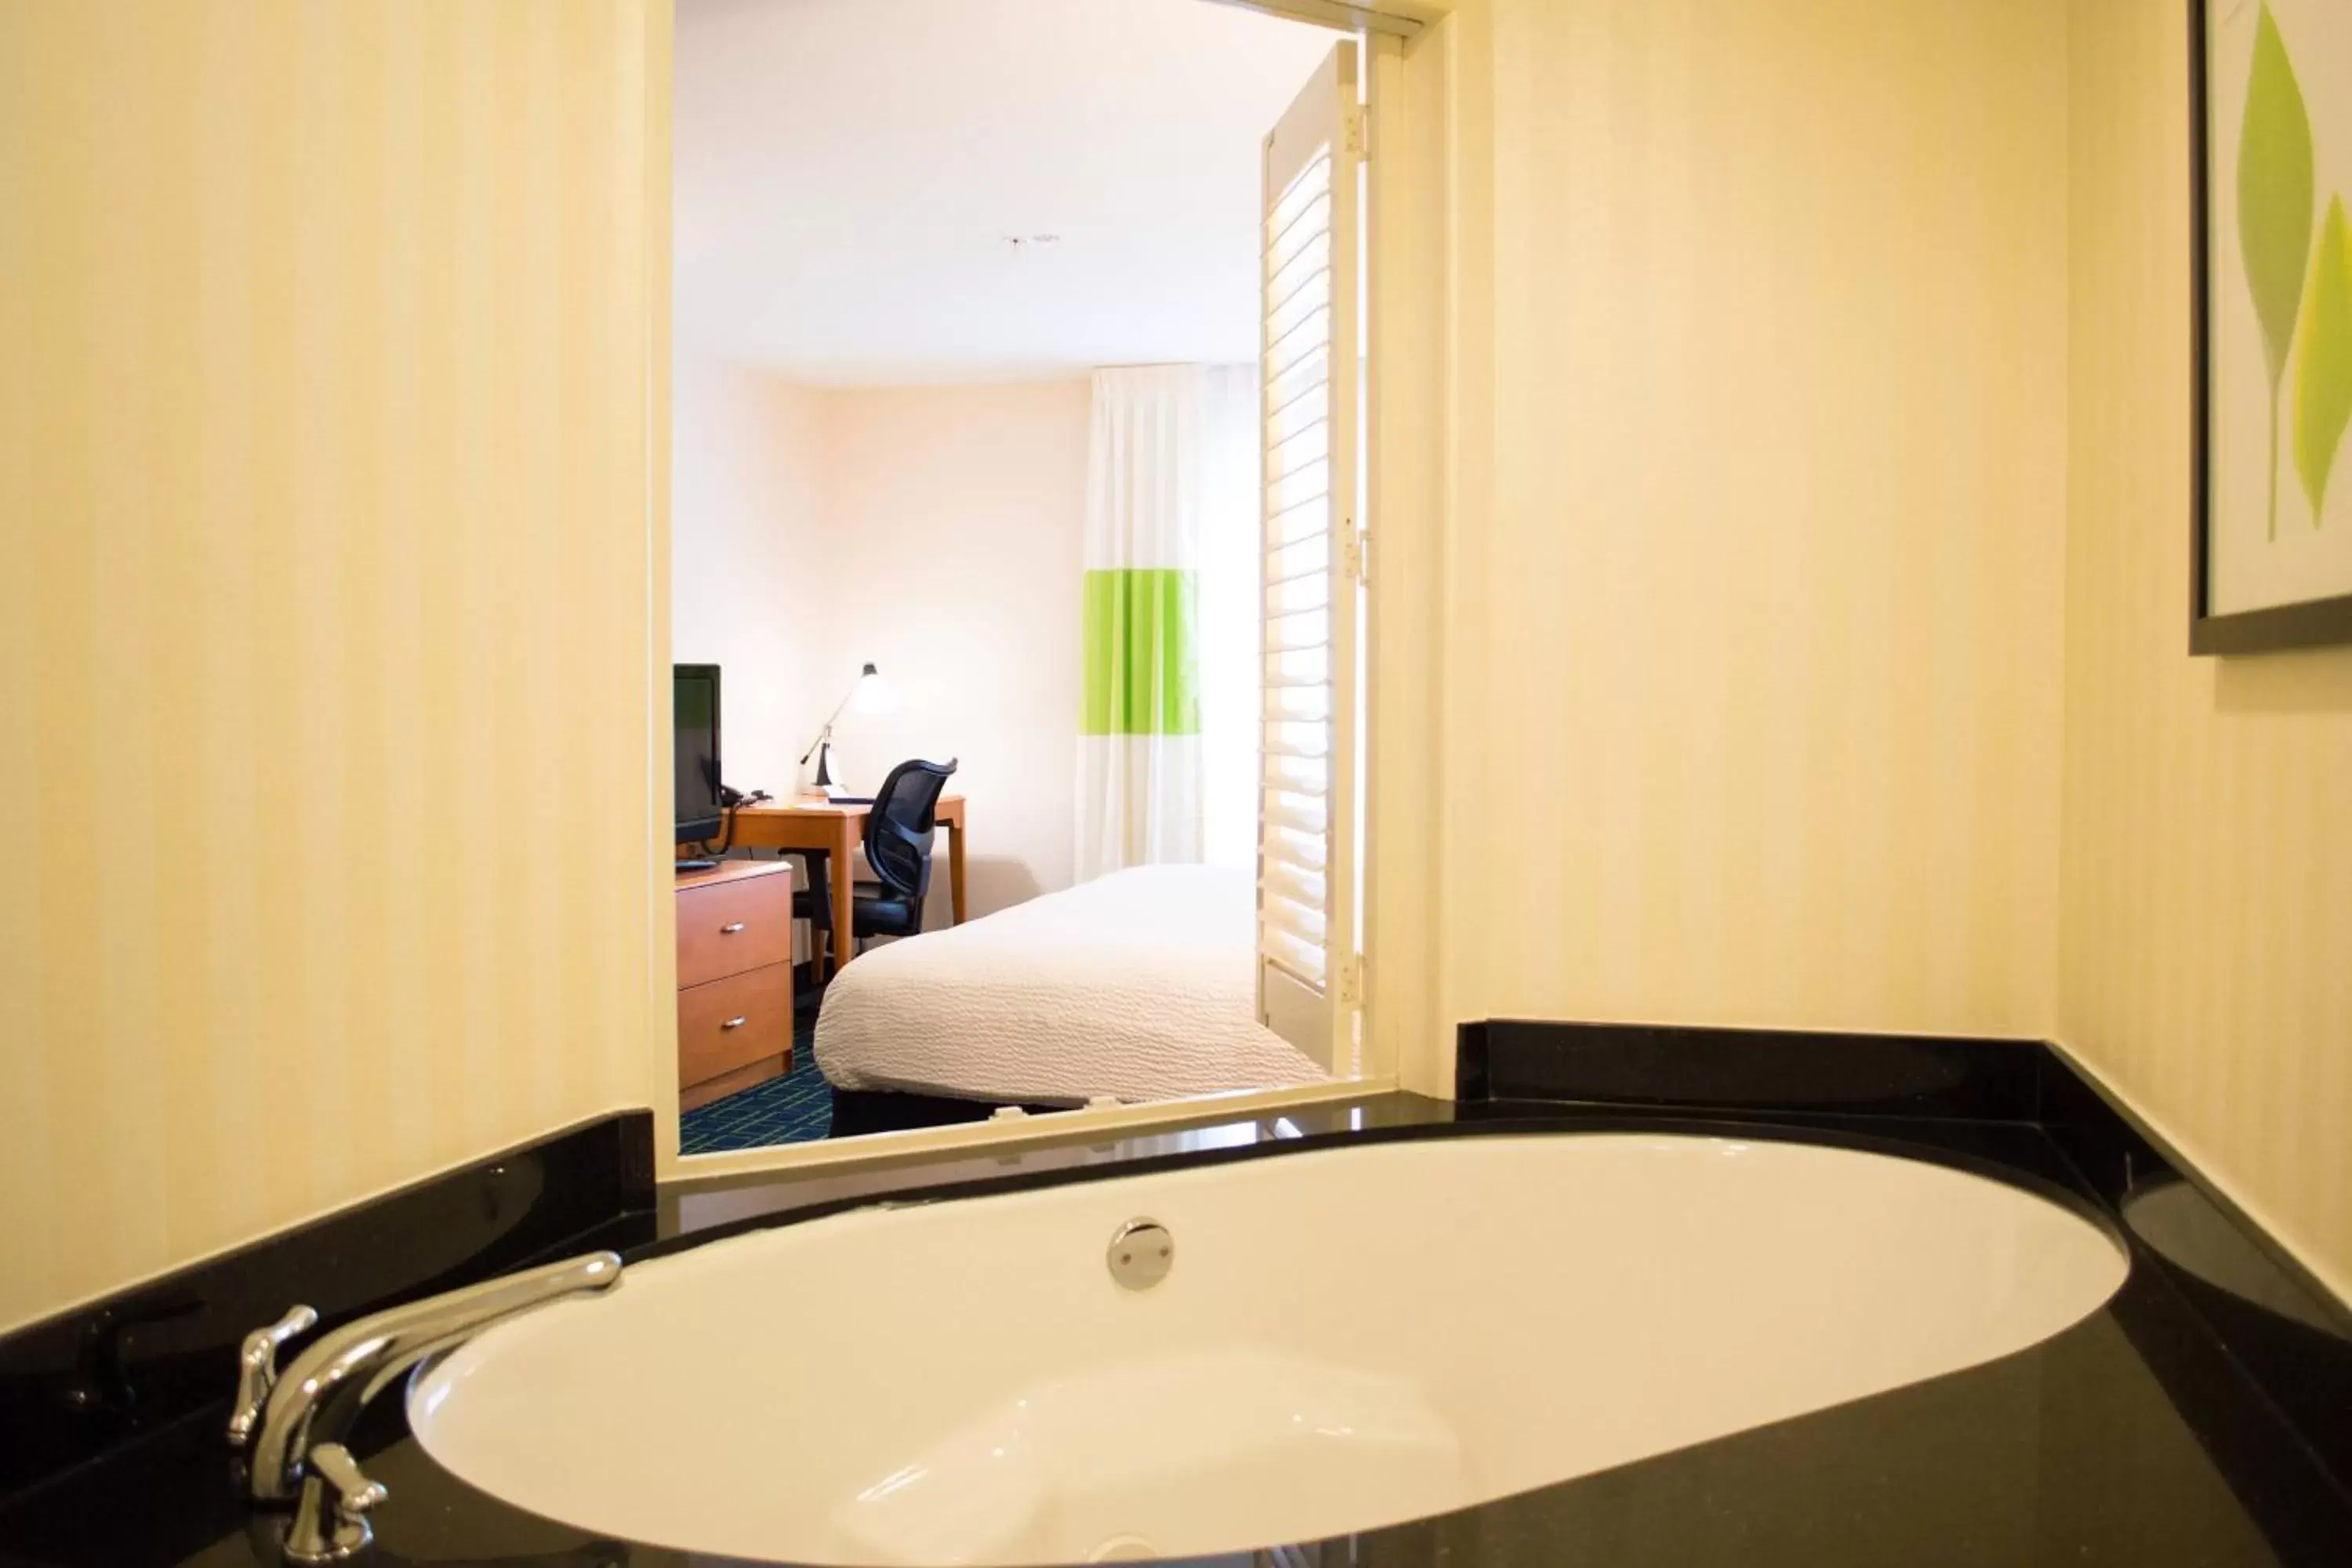 Swimming pool, Bathroom in Fairfield Inn & Suites by Marriott San Antonio North/Stone Oak